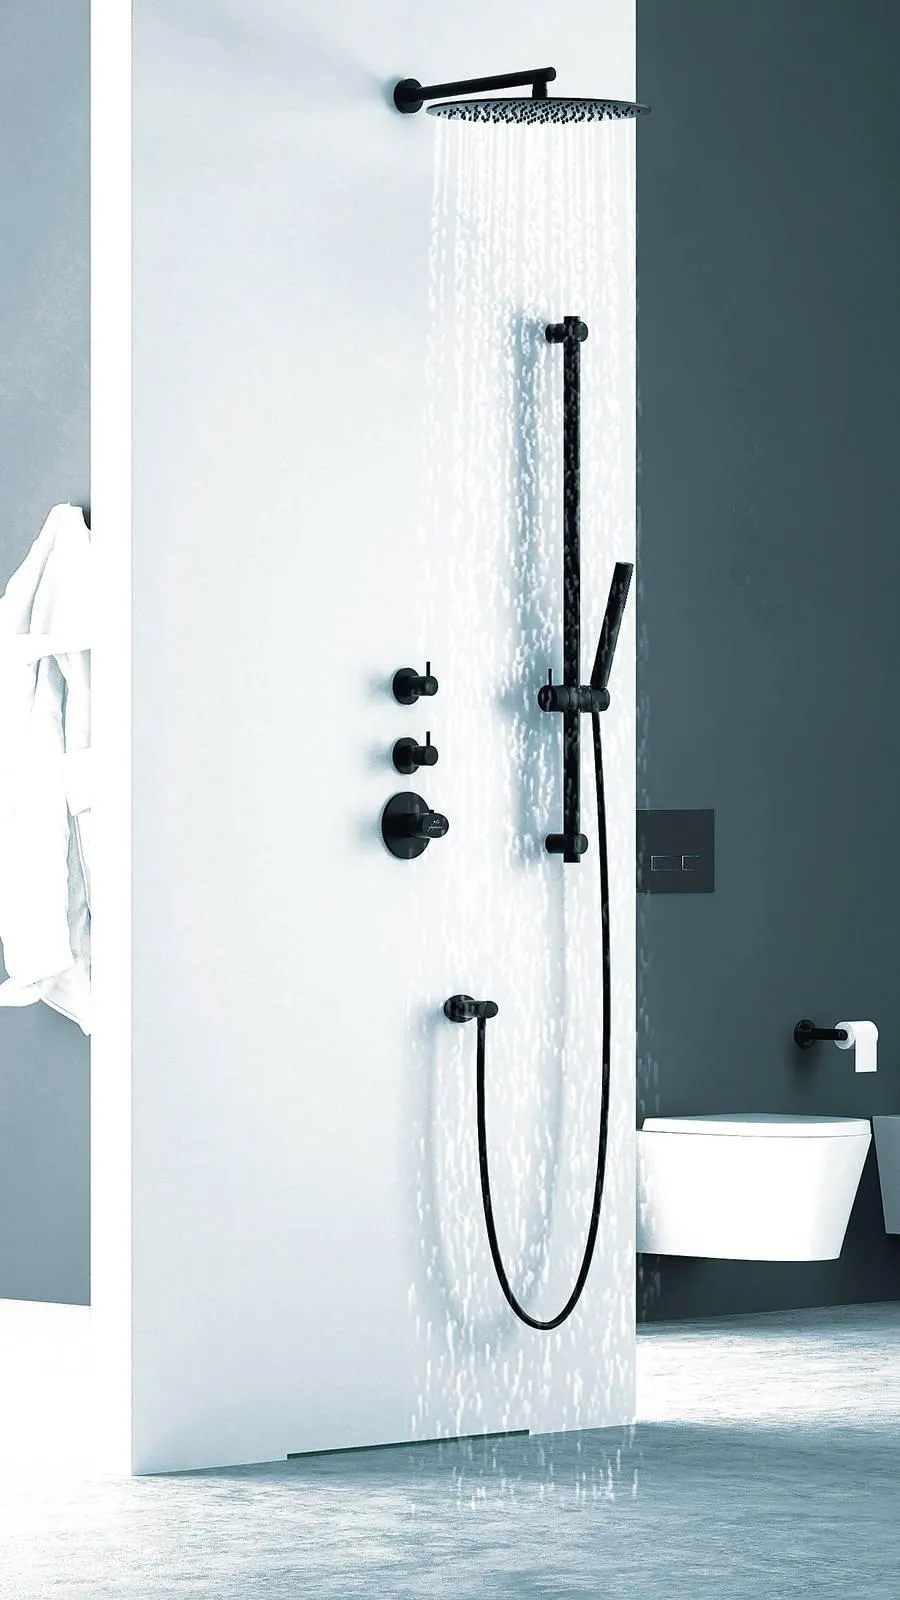 Gruppo doccia: soffioni e doccette, coppia per il benessere - Cose di Casa